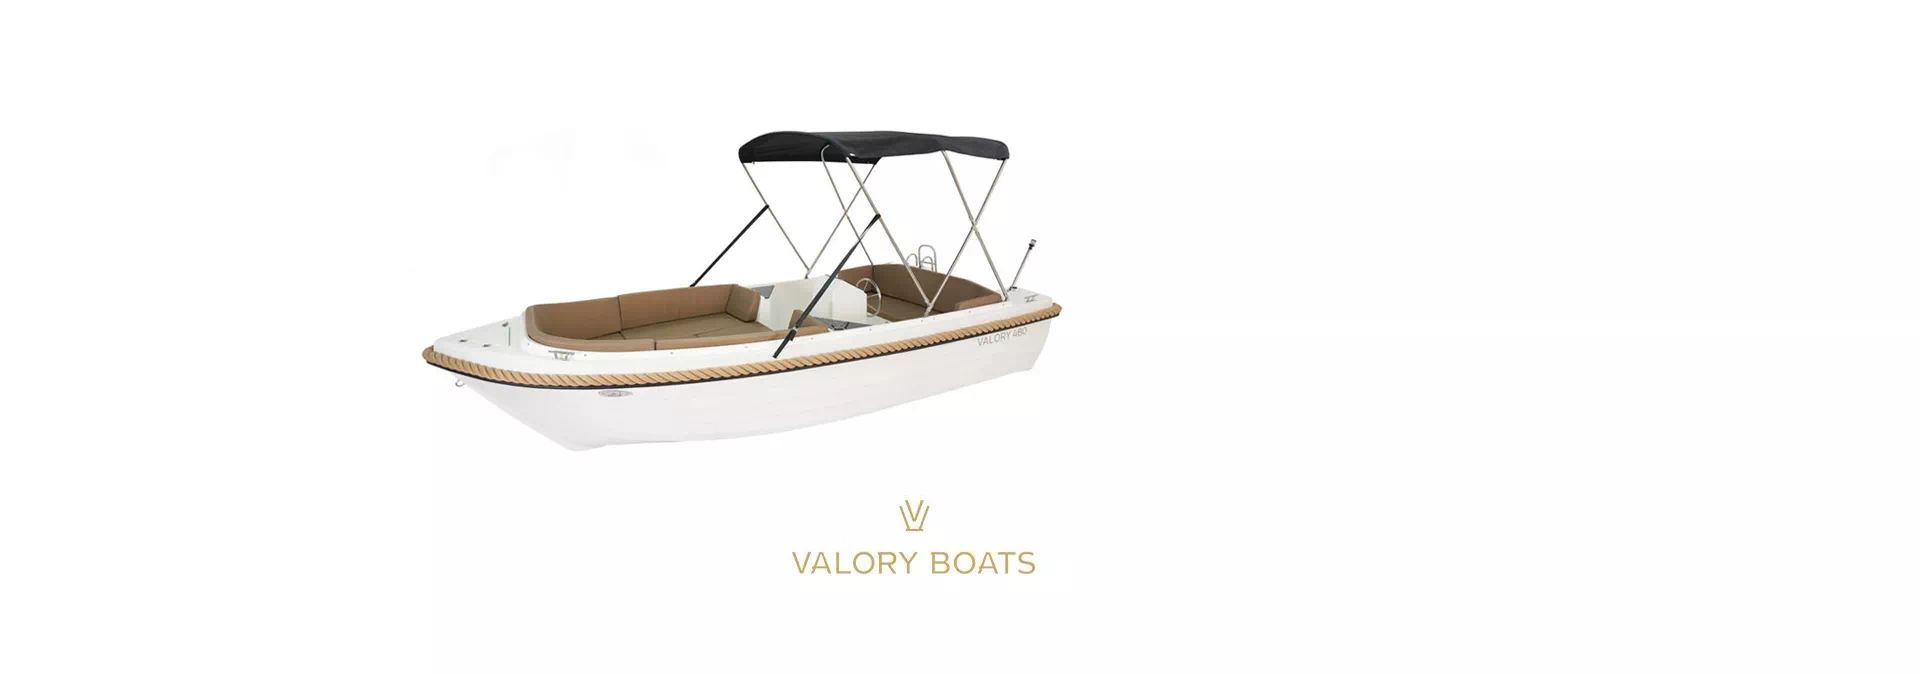 valory boats